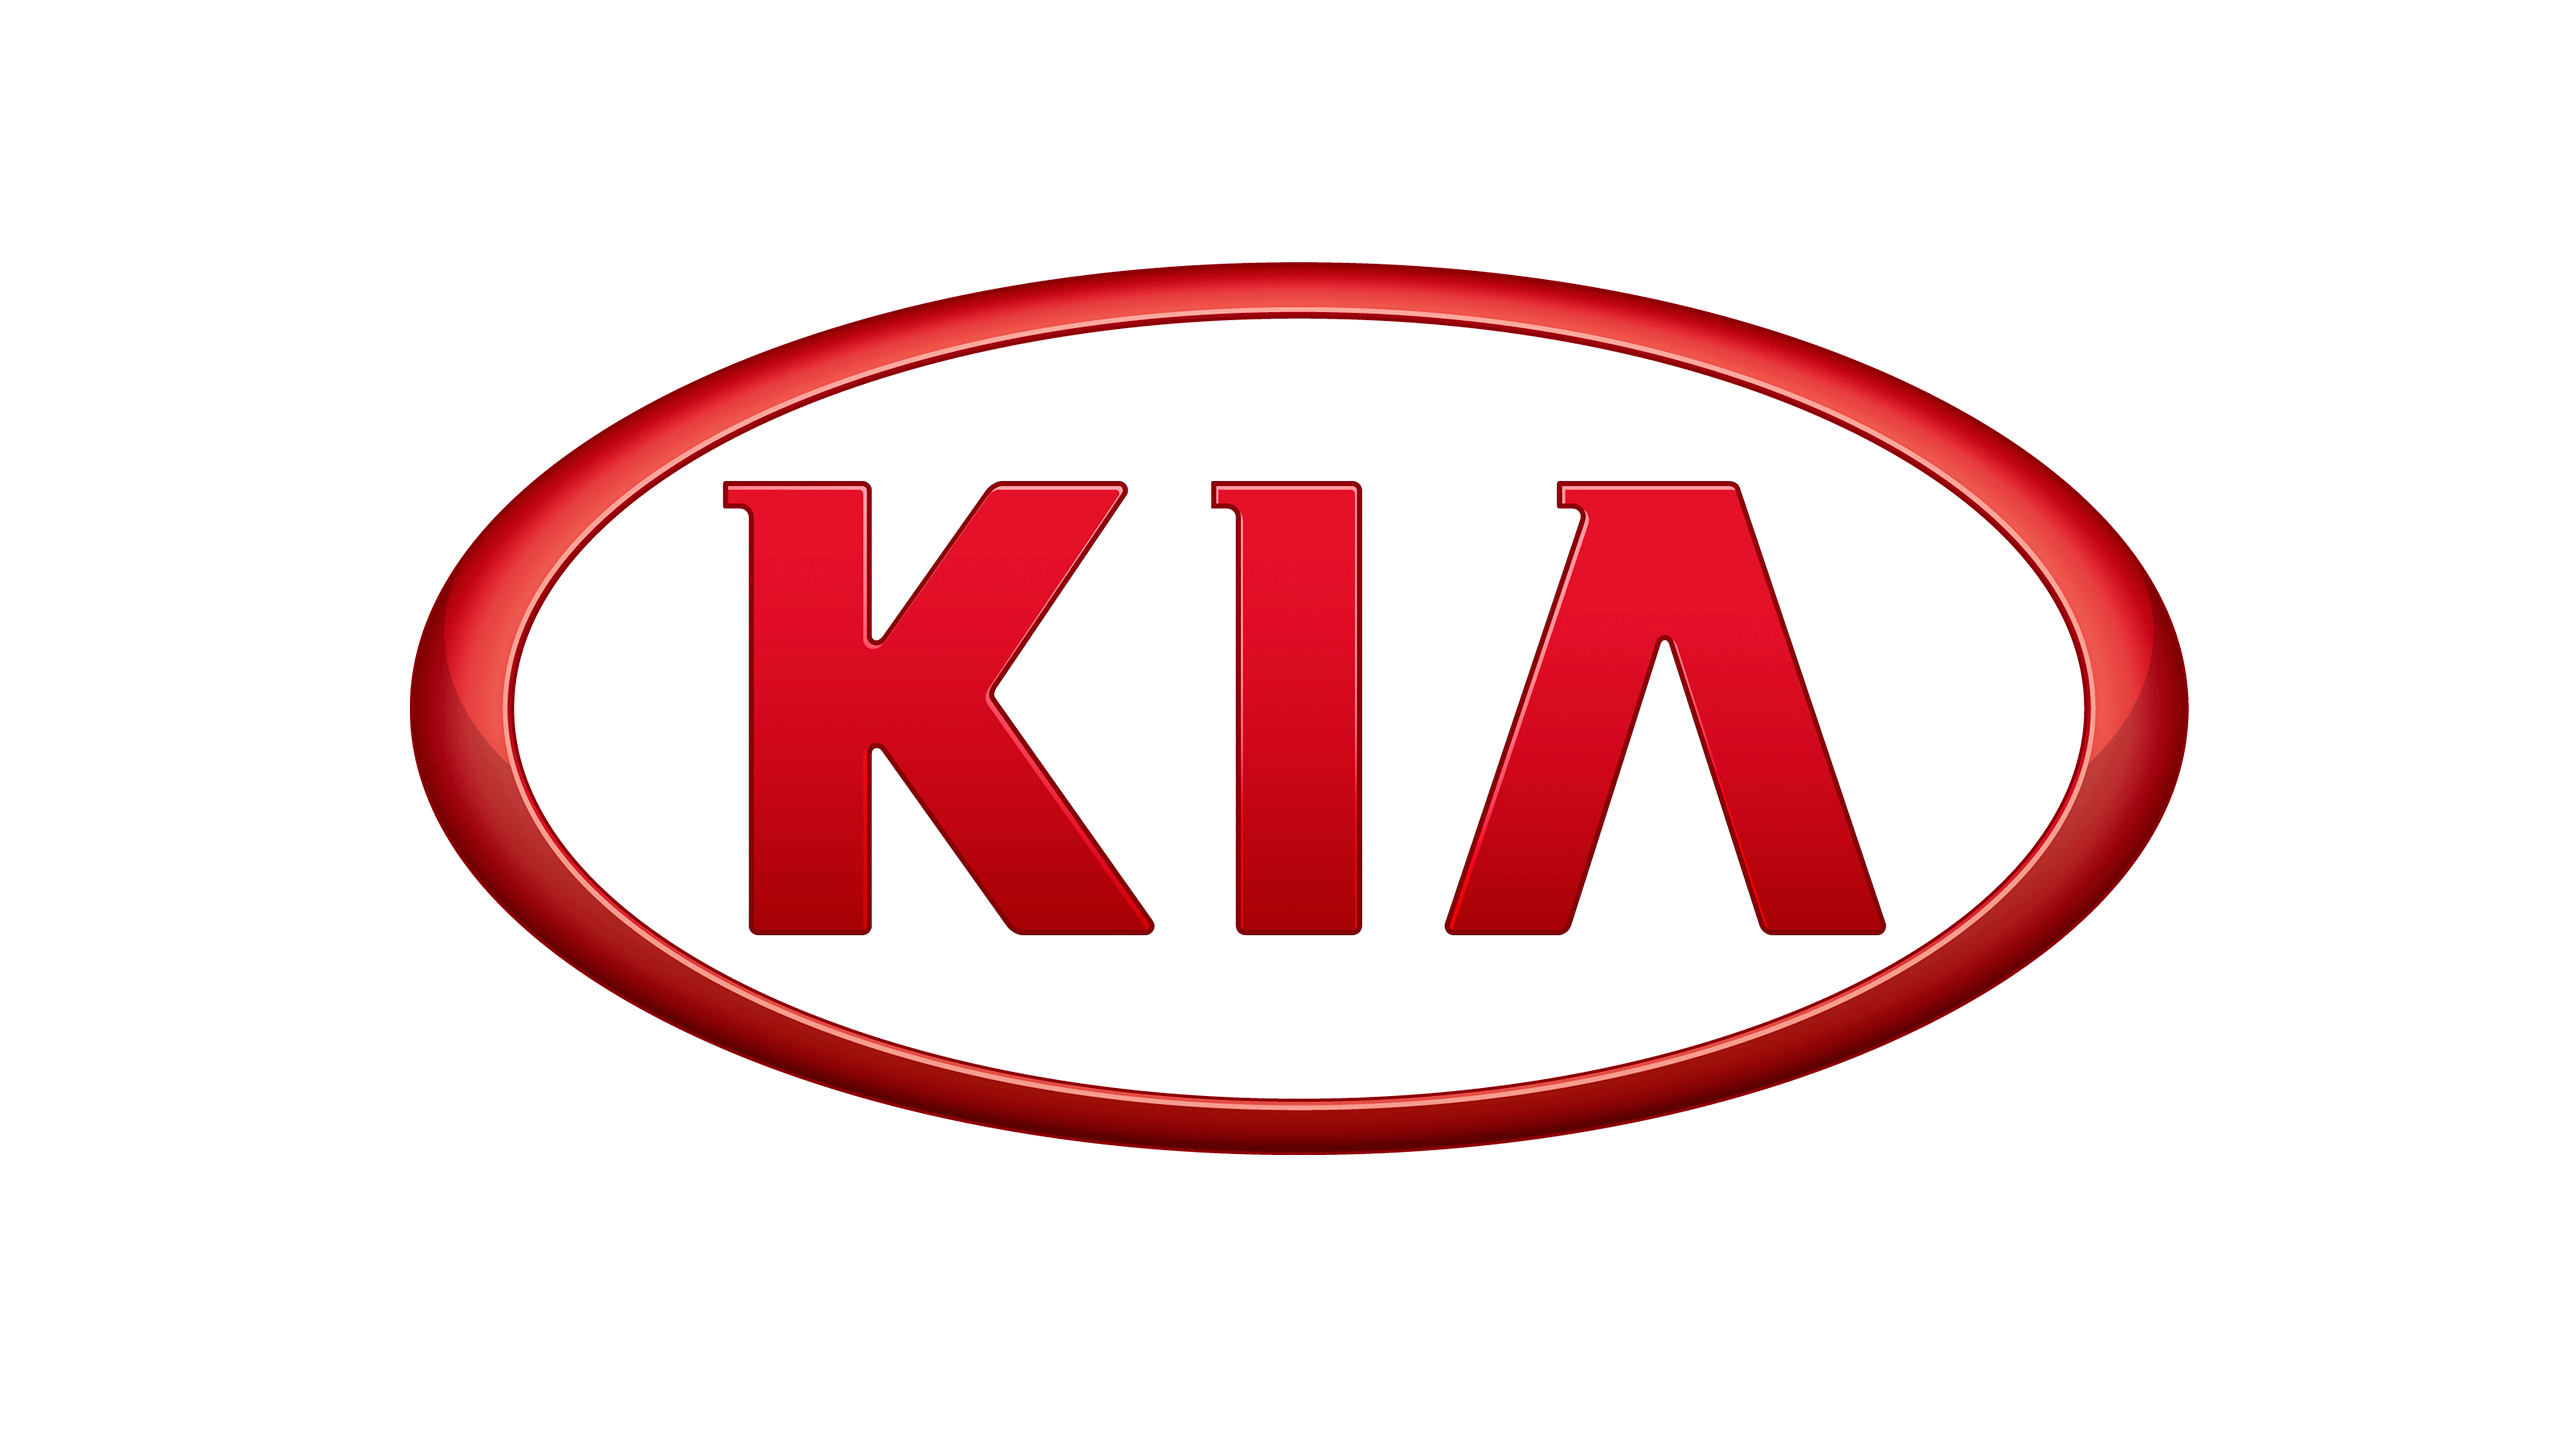 Car Motors Sportage Logo Kia K9 Transparent Clipart